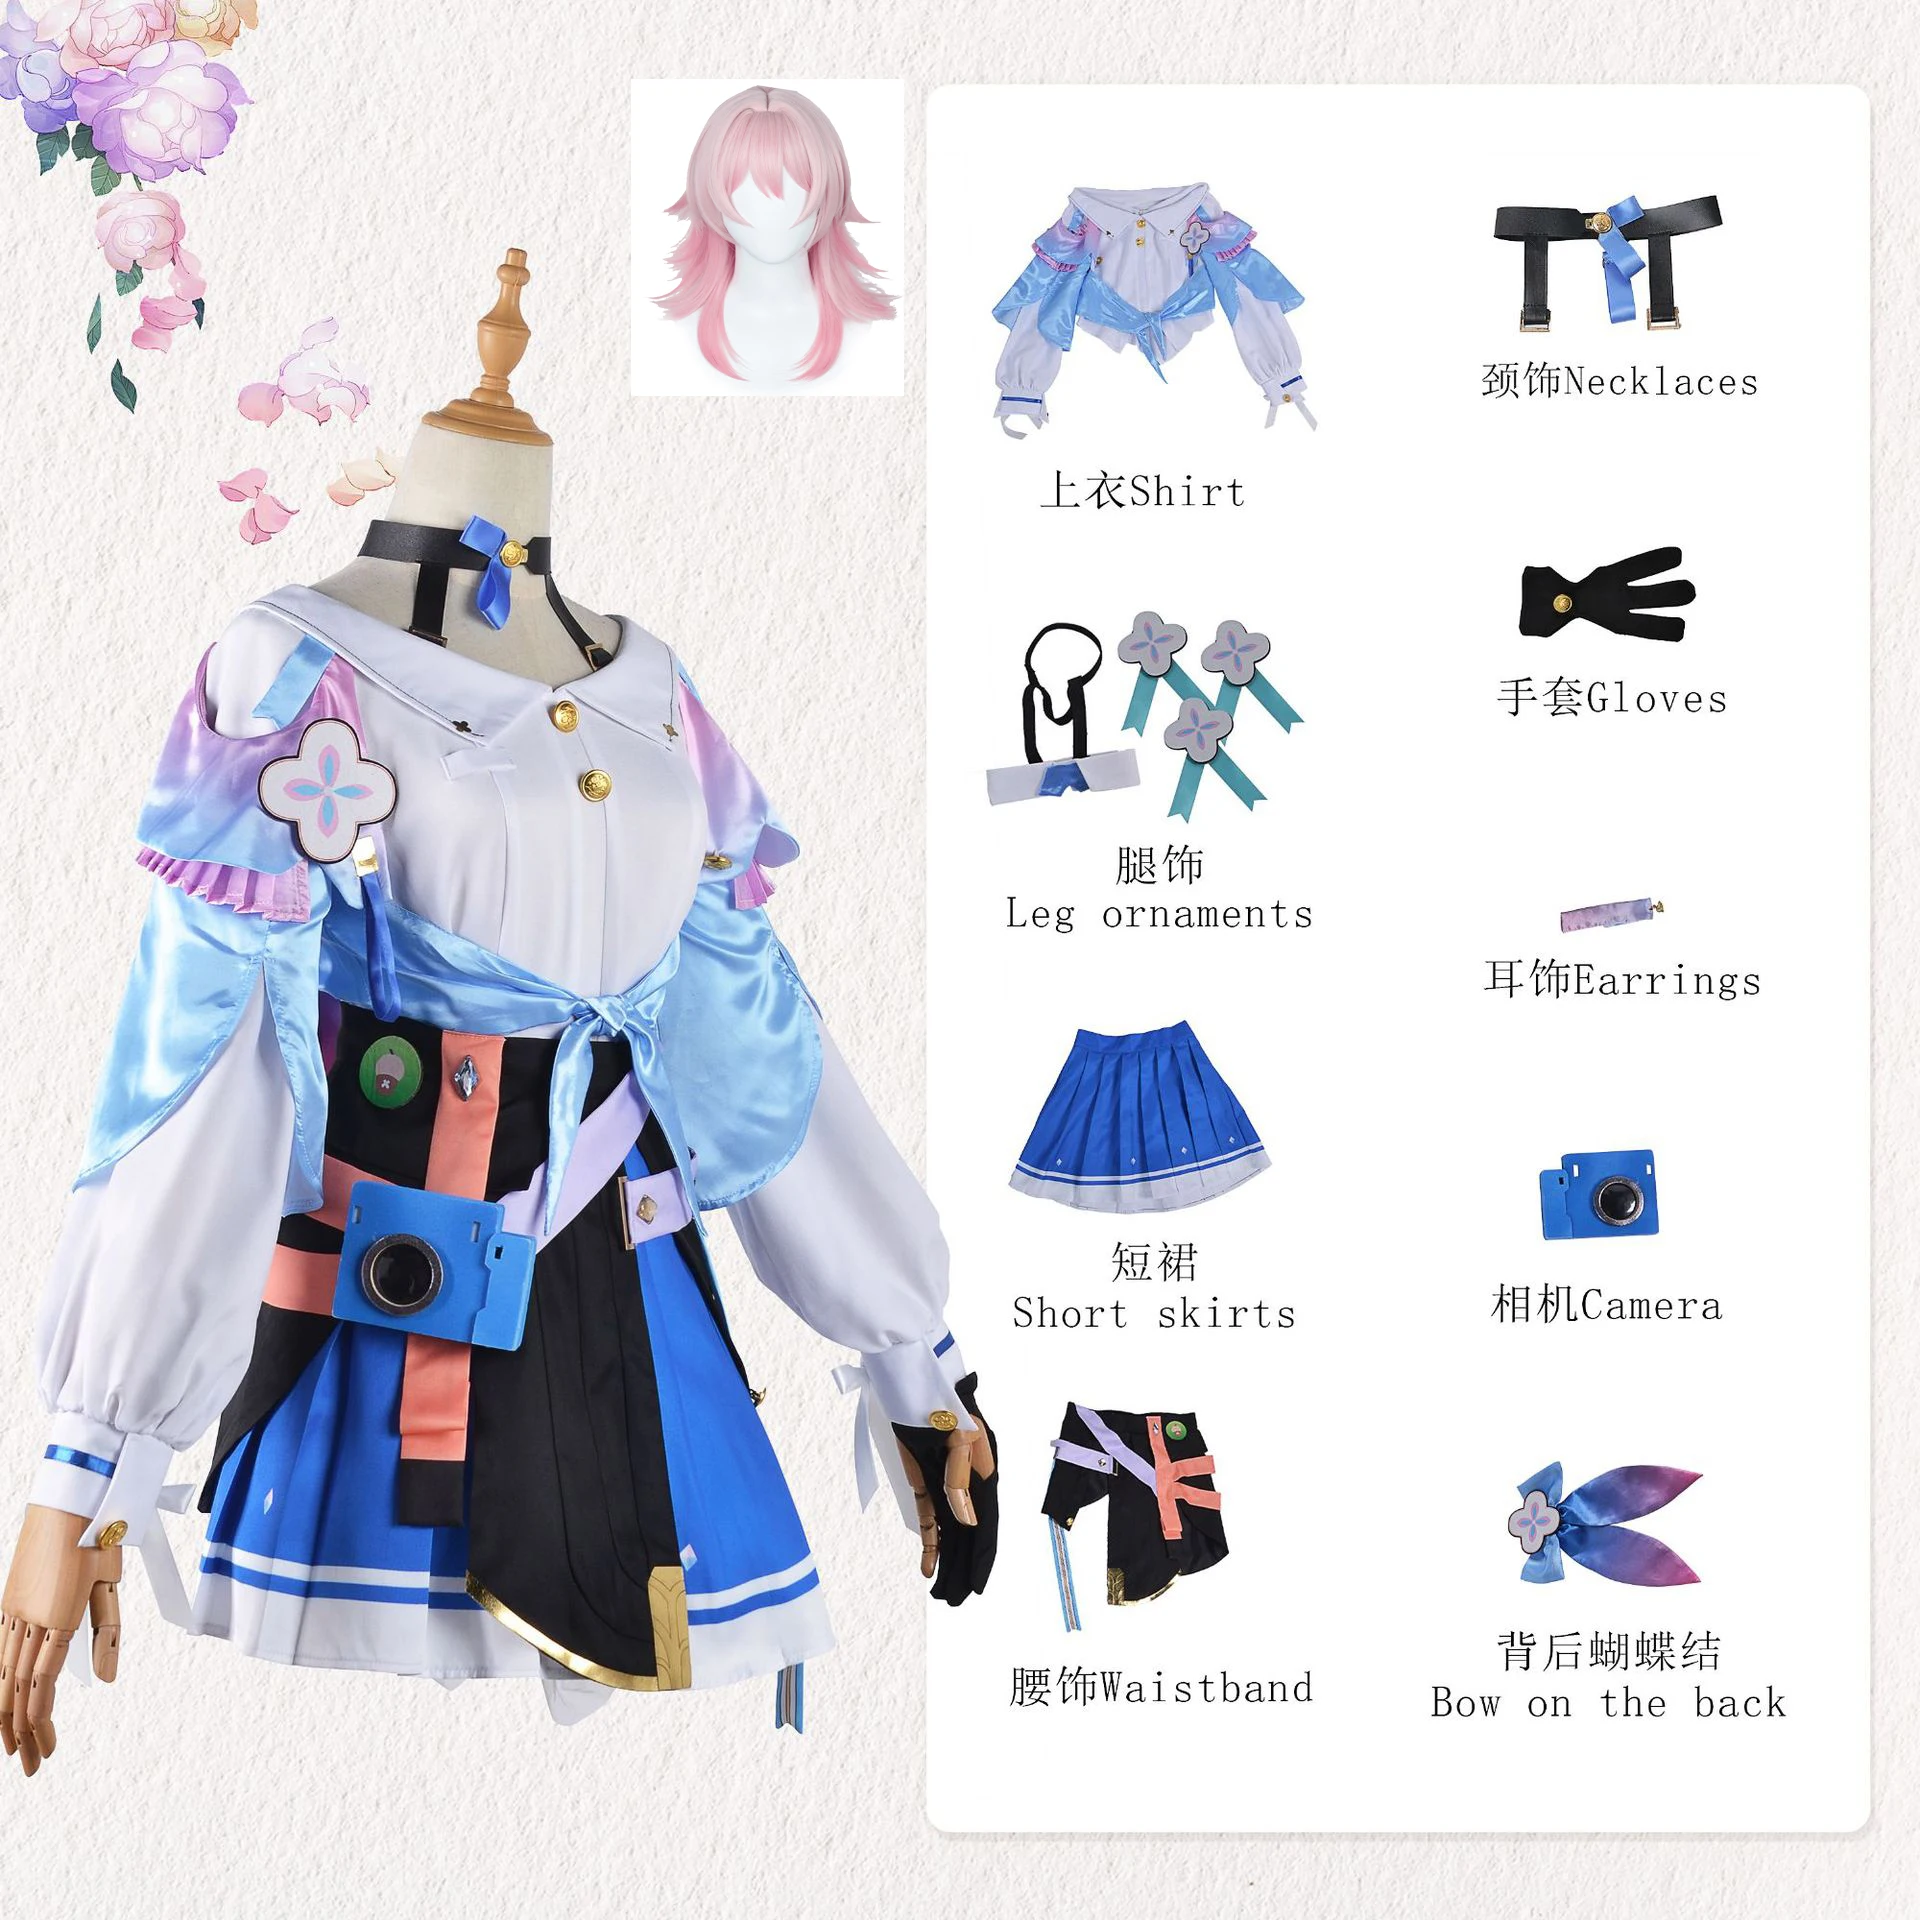 

Костюмы для косплея игры Honkai Star Rail 7 марта, Униформа, наряд на Хэллоуин, женский розовый парик 7 марта, платья, парик для ролевых игр